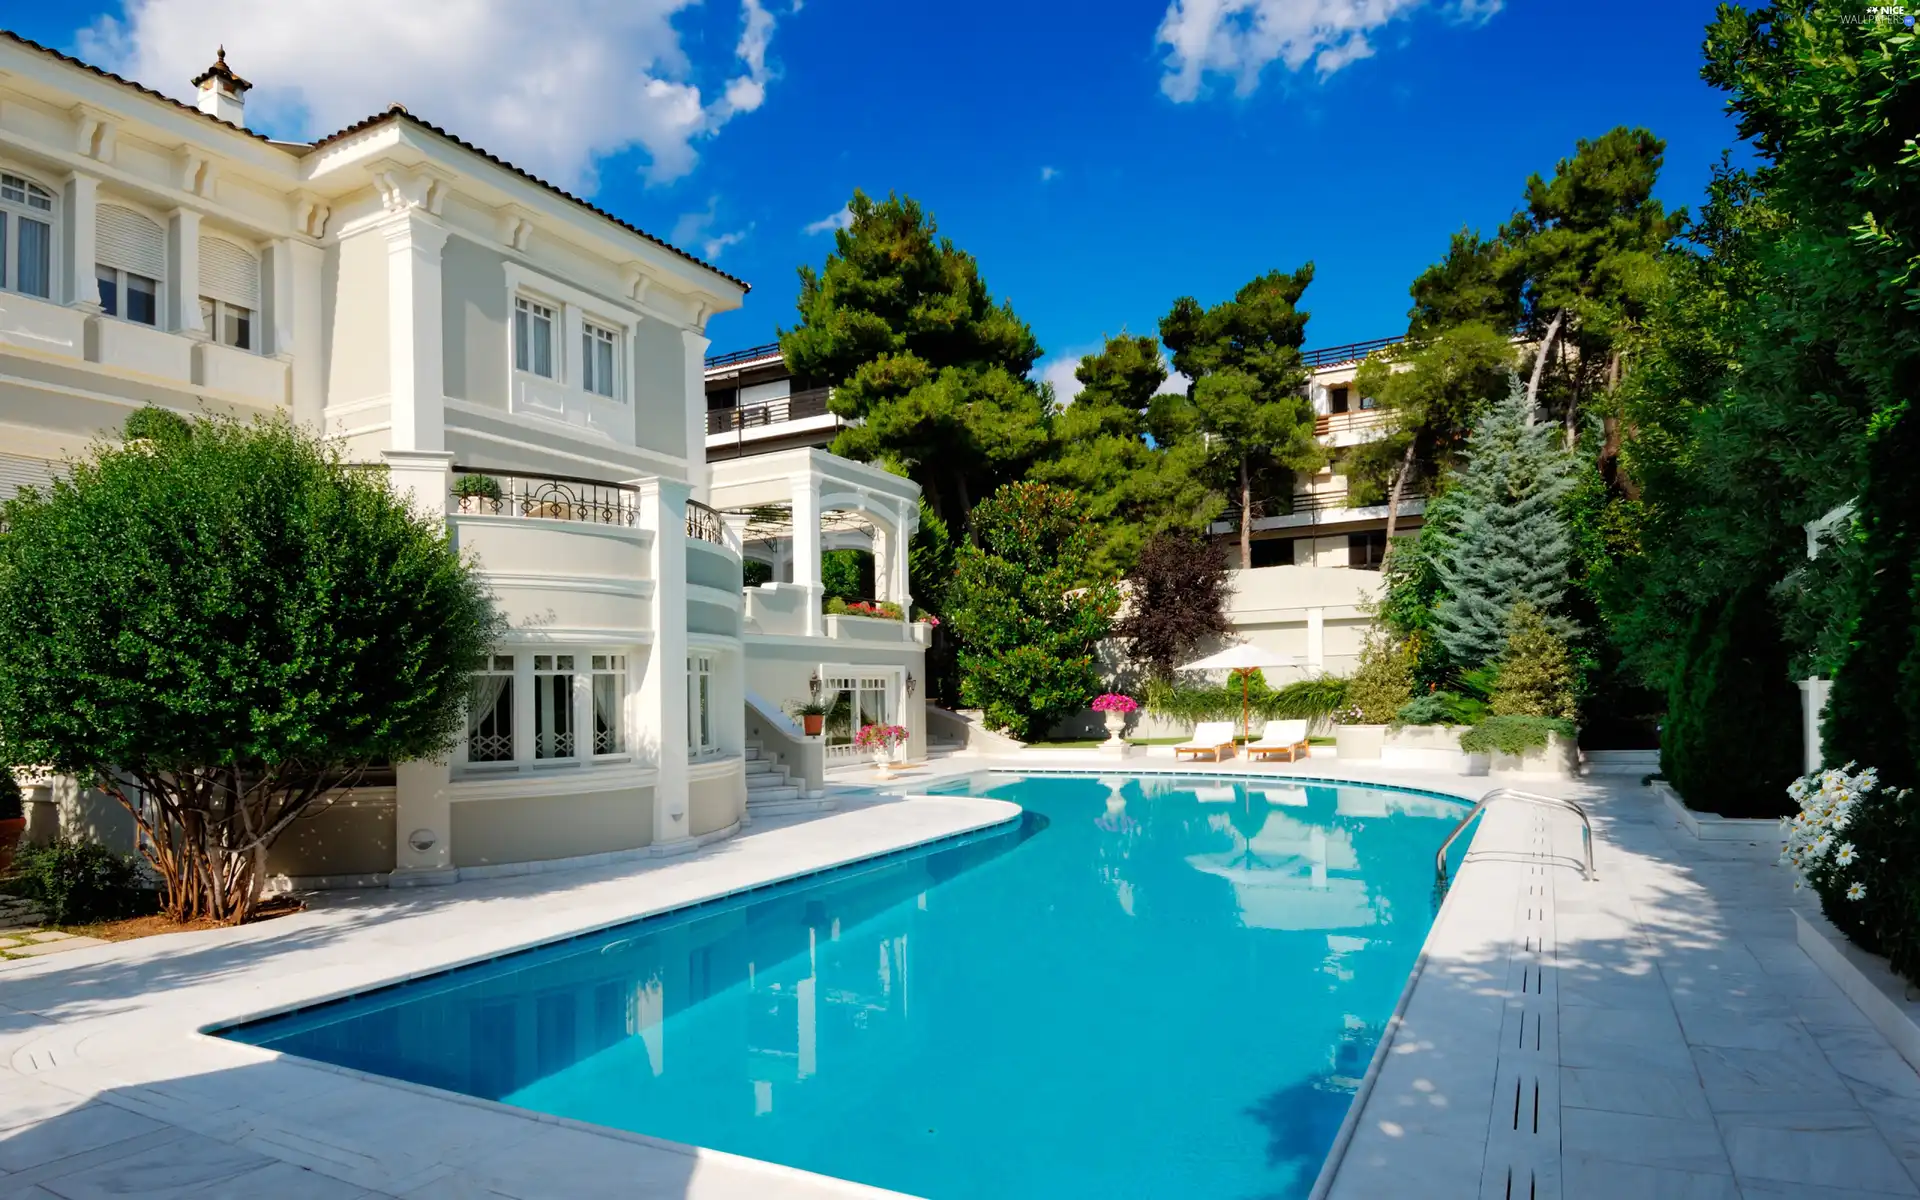 Pool, Beauty, villa